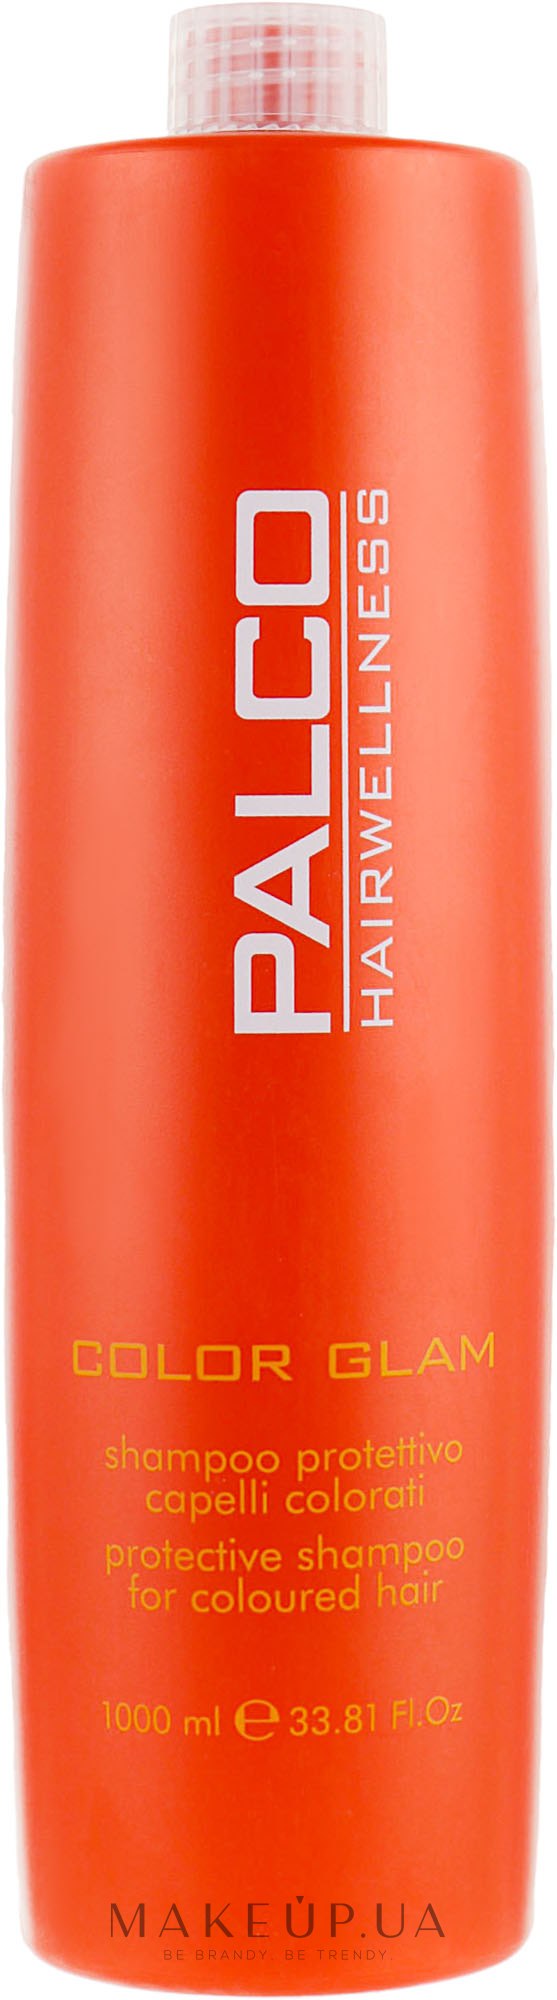 Шампунь для окрашенных волос - Palco Professional Color Glem Shampoo — фото 1000ml